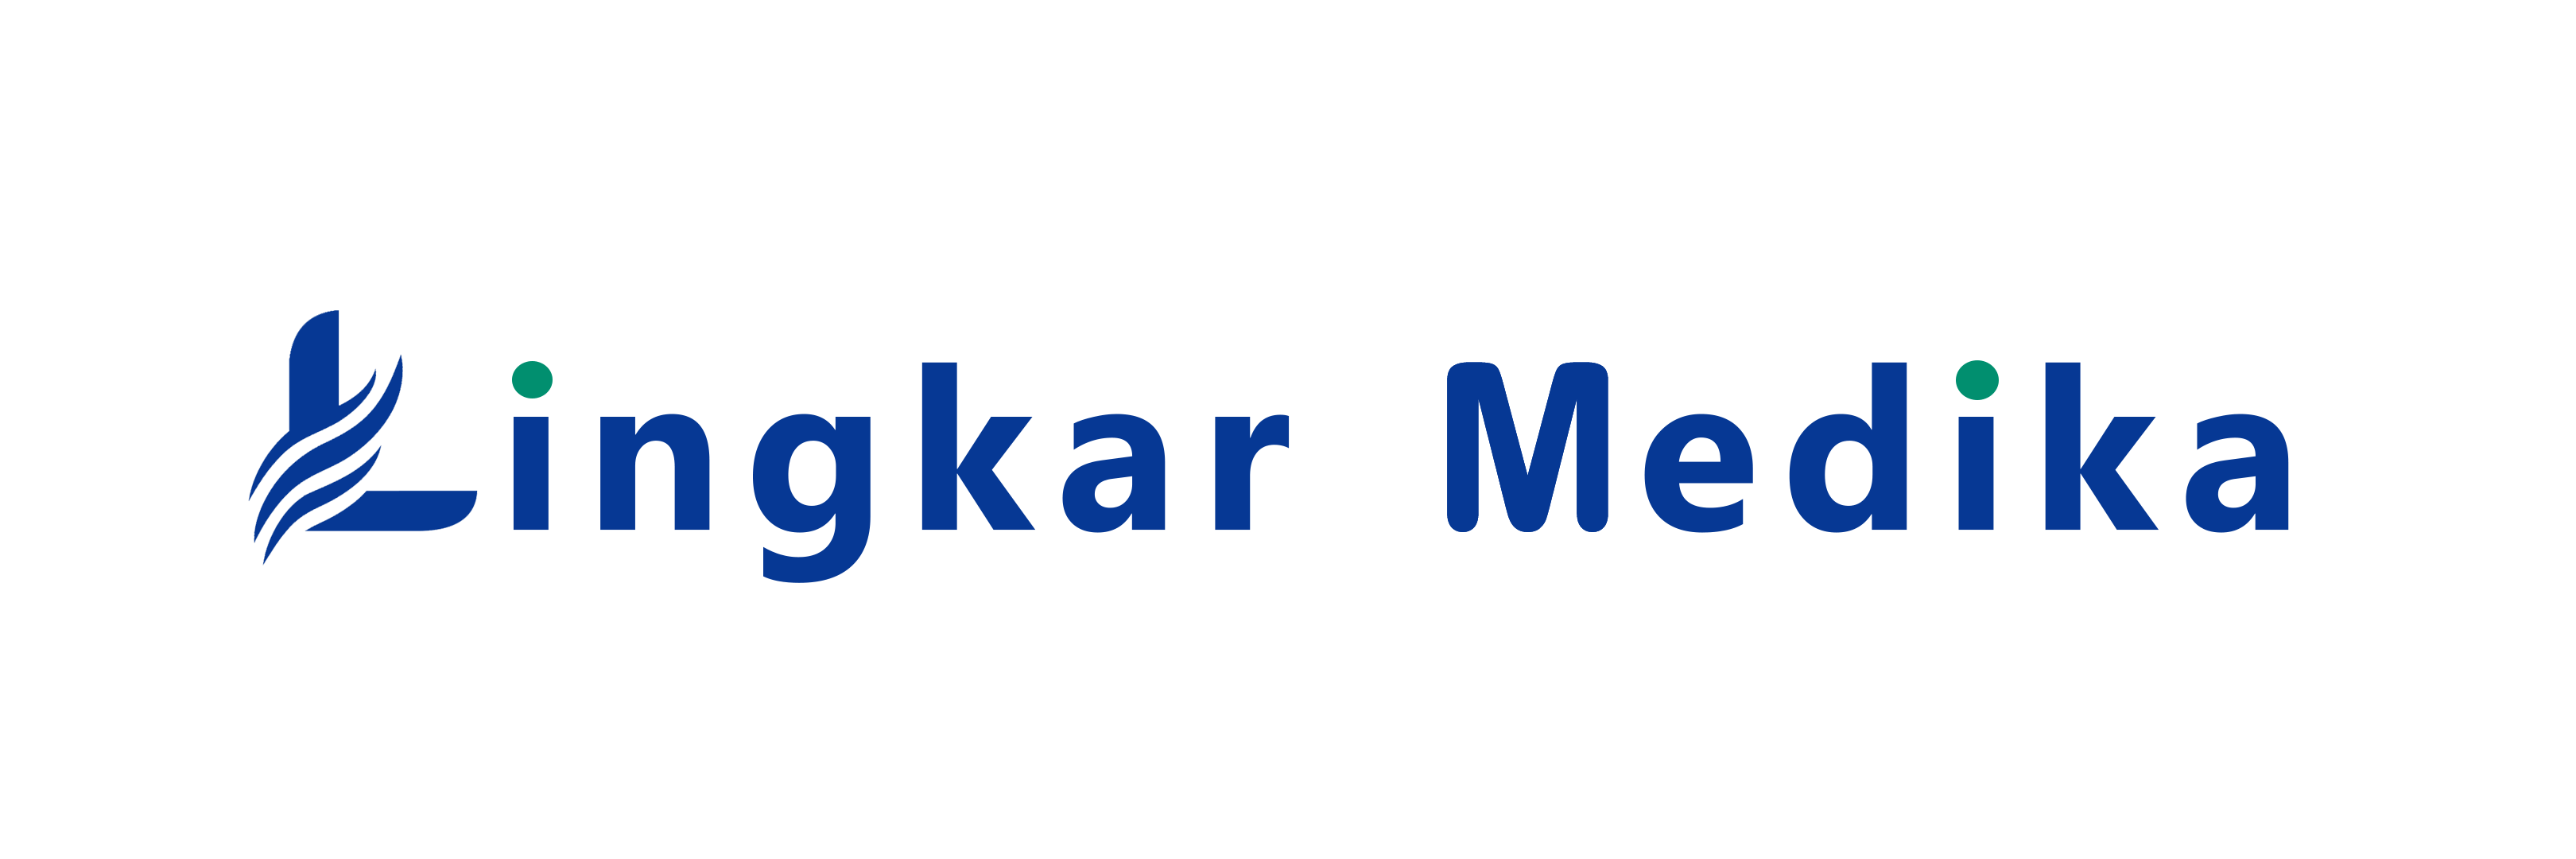 Lingkar Medika